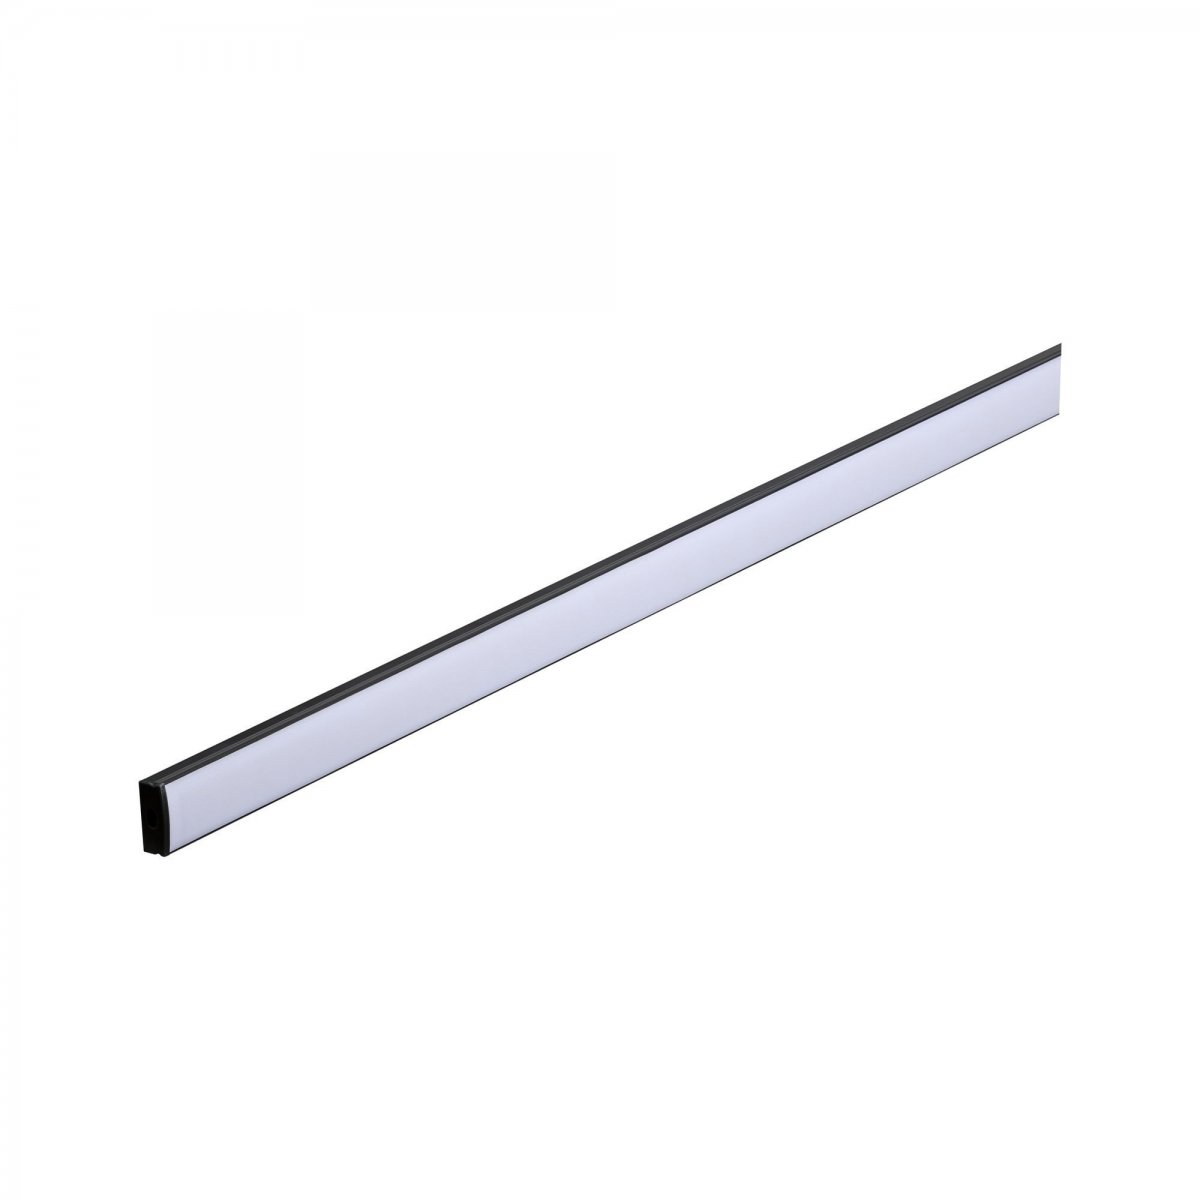 Paulmann No. 78901 Base Profil 2m mit weißem Diffusor eloxiert --> Leuchten  & Lampen online kaufen im Shop